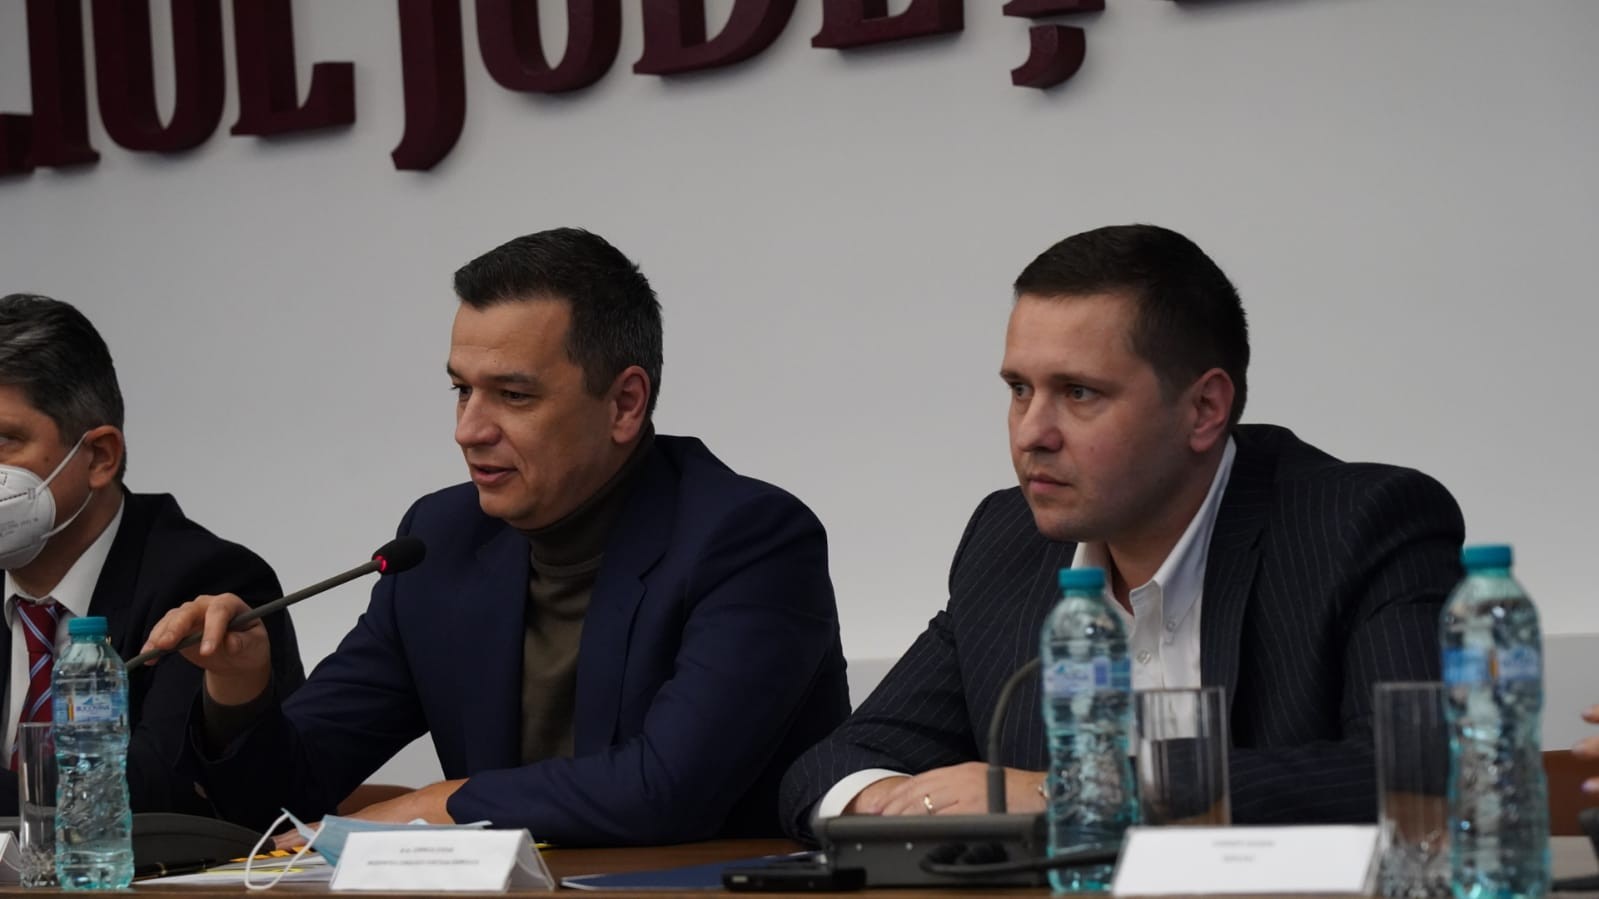  2022, început de drum pentru proiectele de anvergură ale județului Dâmbovița